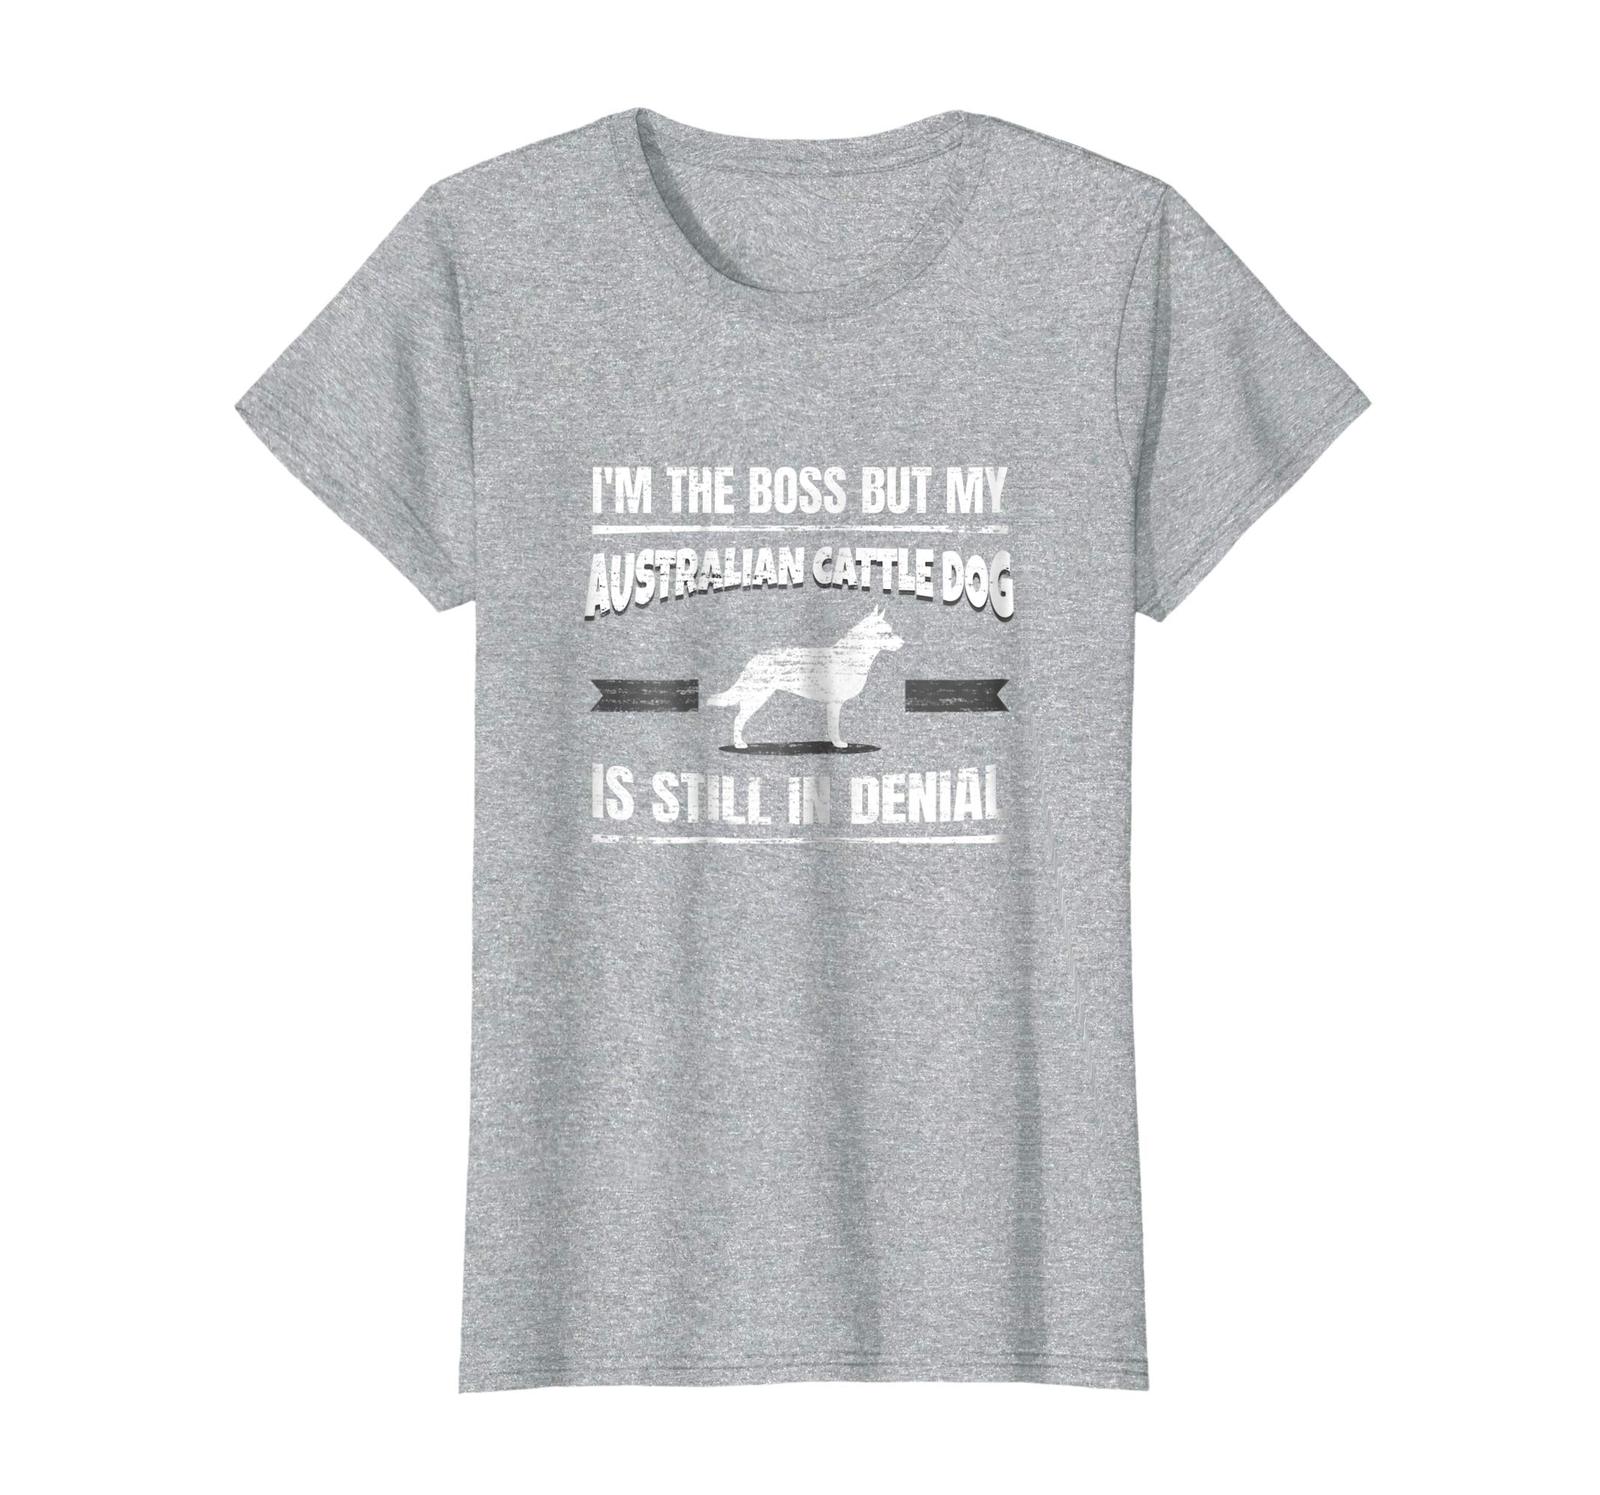 Dog Fashion - Australian Cattle Dog Dog Training Funny Dog Lover Shirt Wowen